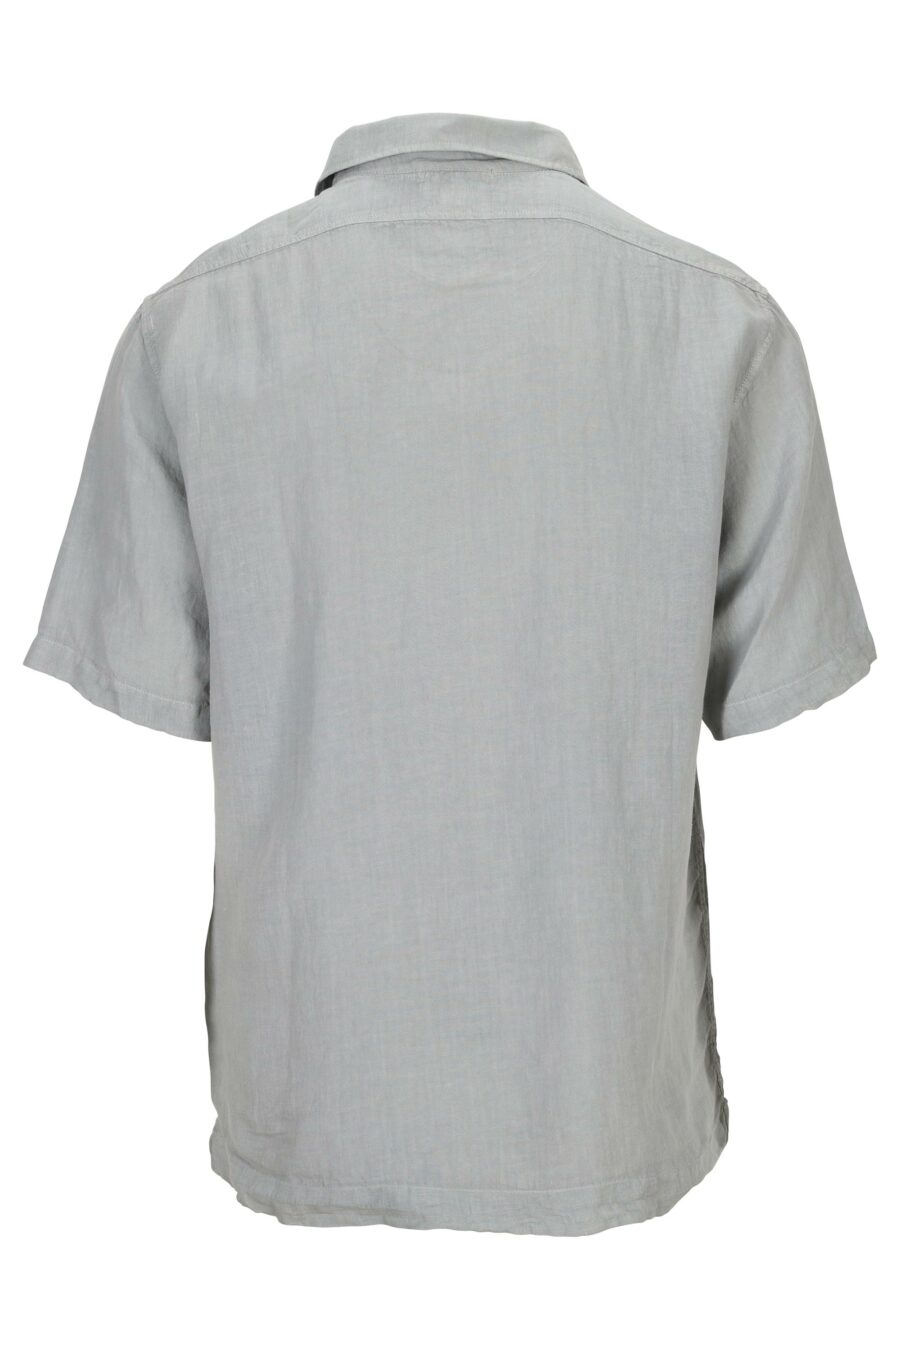 Camisa manga corta gris con botones y bolsillos con minilogo - 7620943668773 1